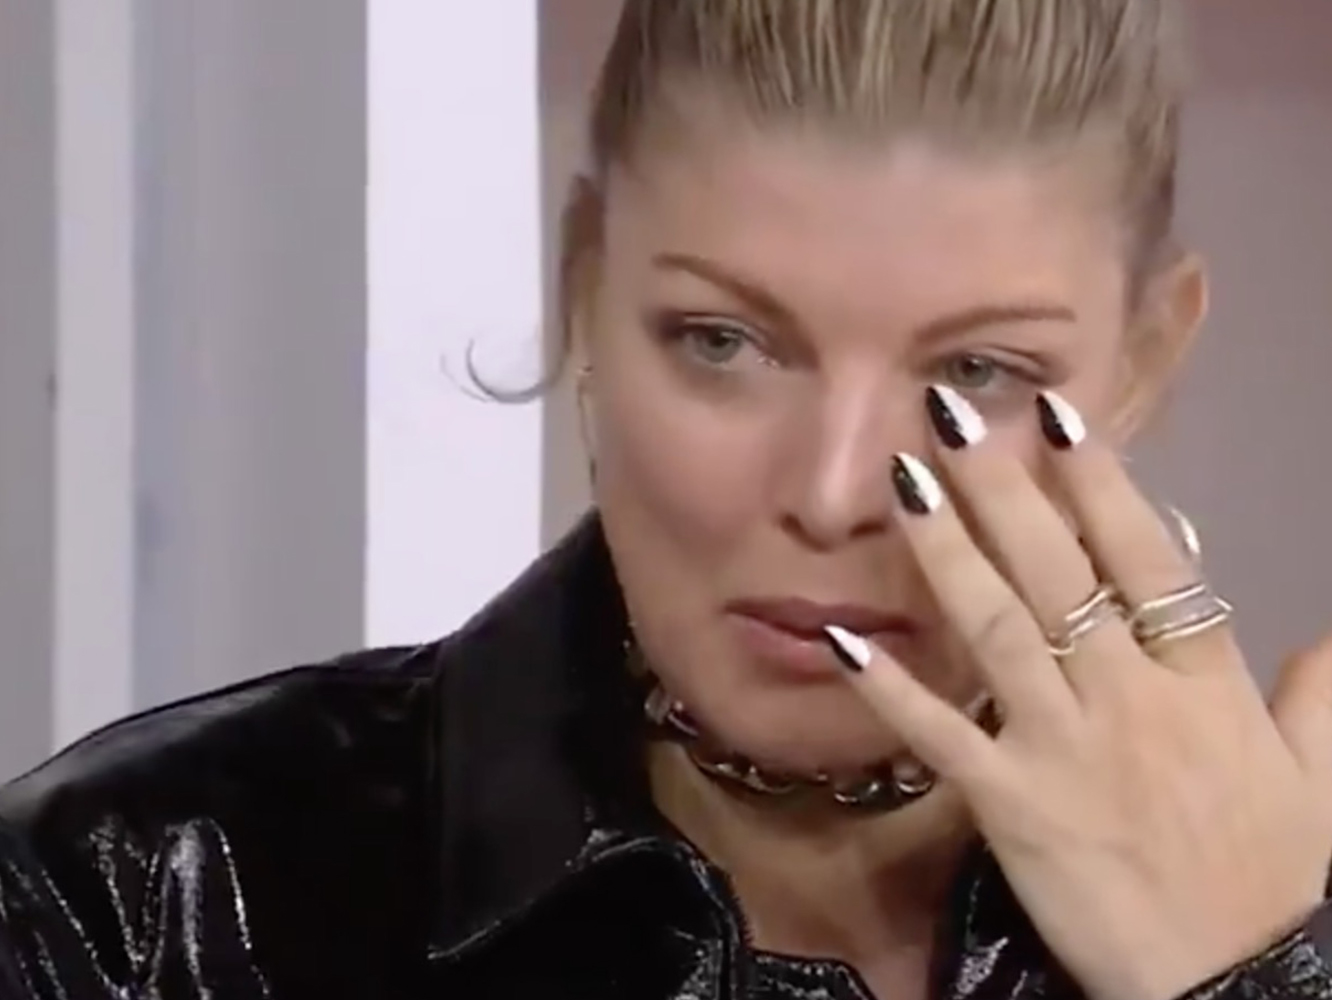  Fergie actúa en la tele, llora tras ser engañada y se enfrenta a catastróficas cifras